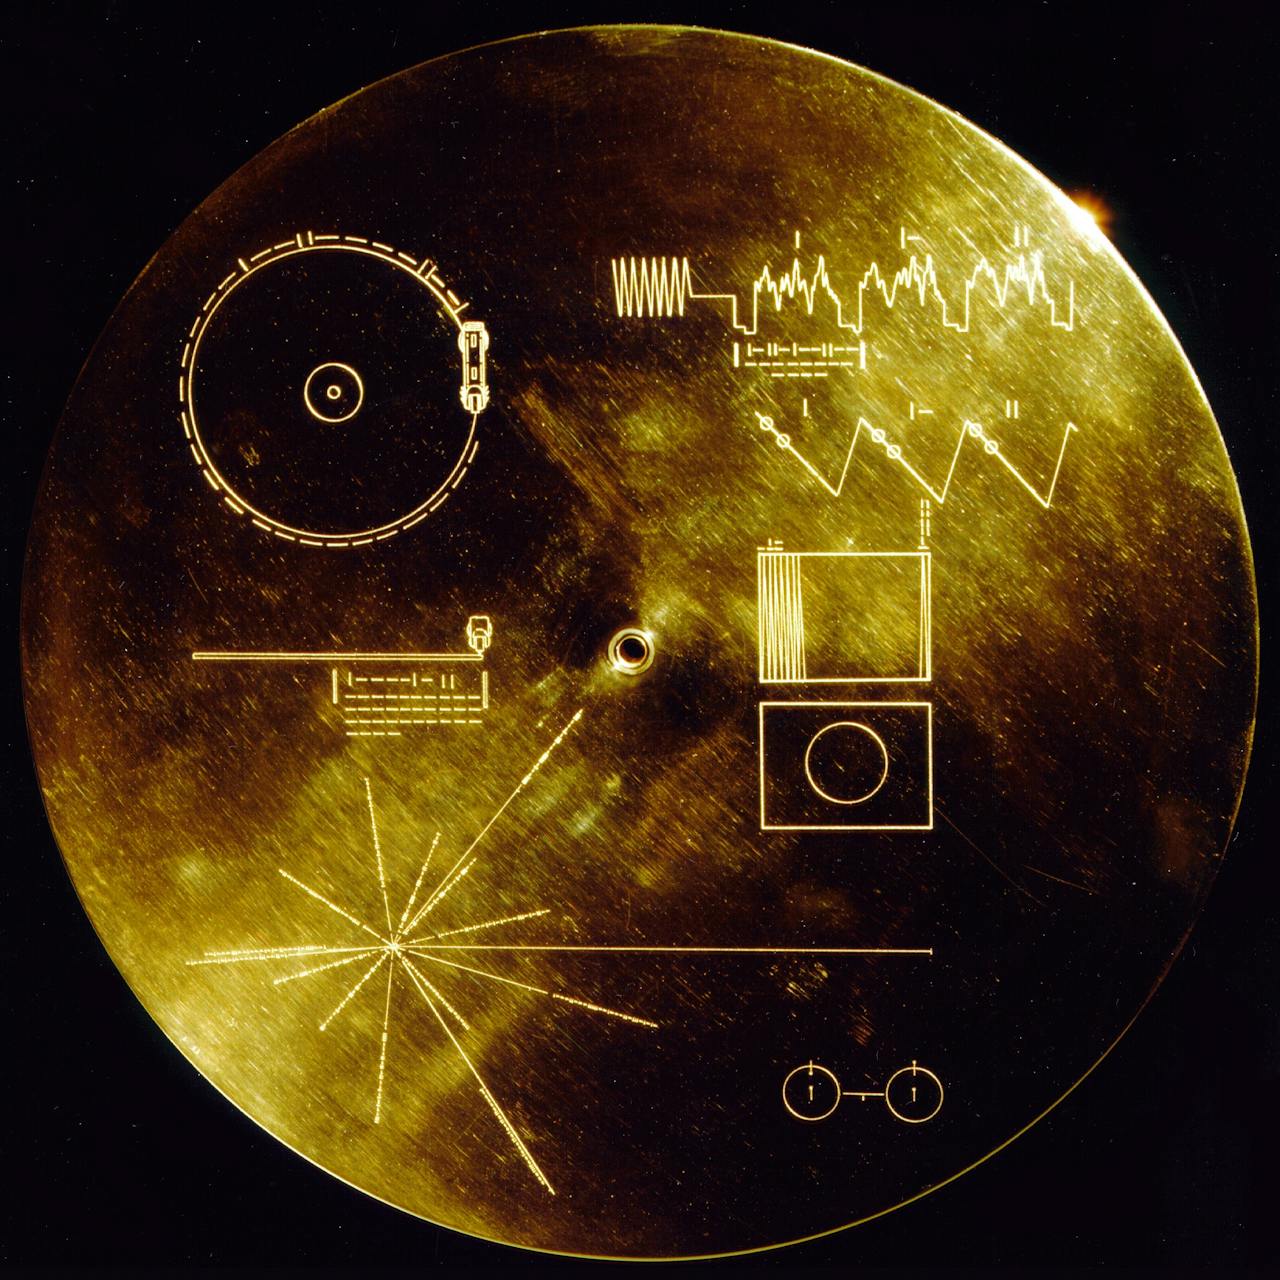 Een afbeelding van gouden plaat Voyager met daarop verschillende voorwerpen.